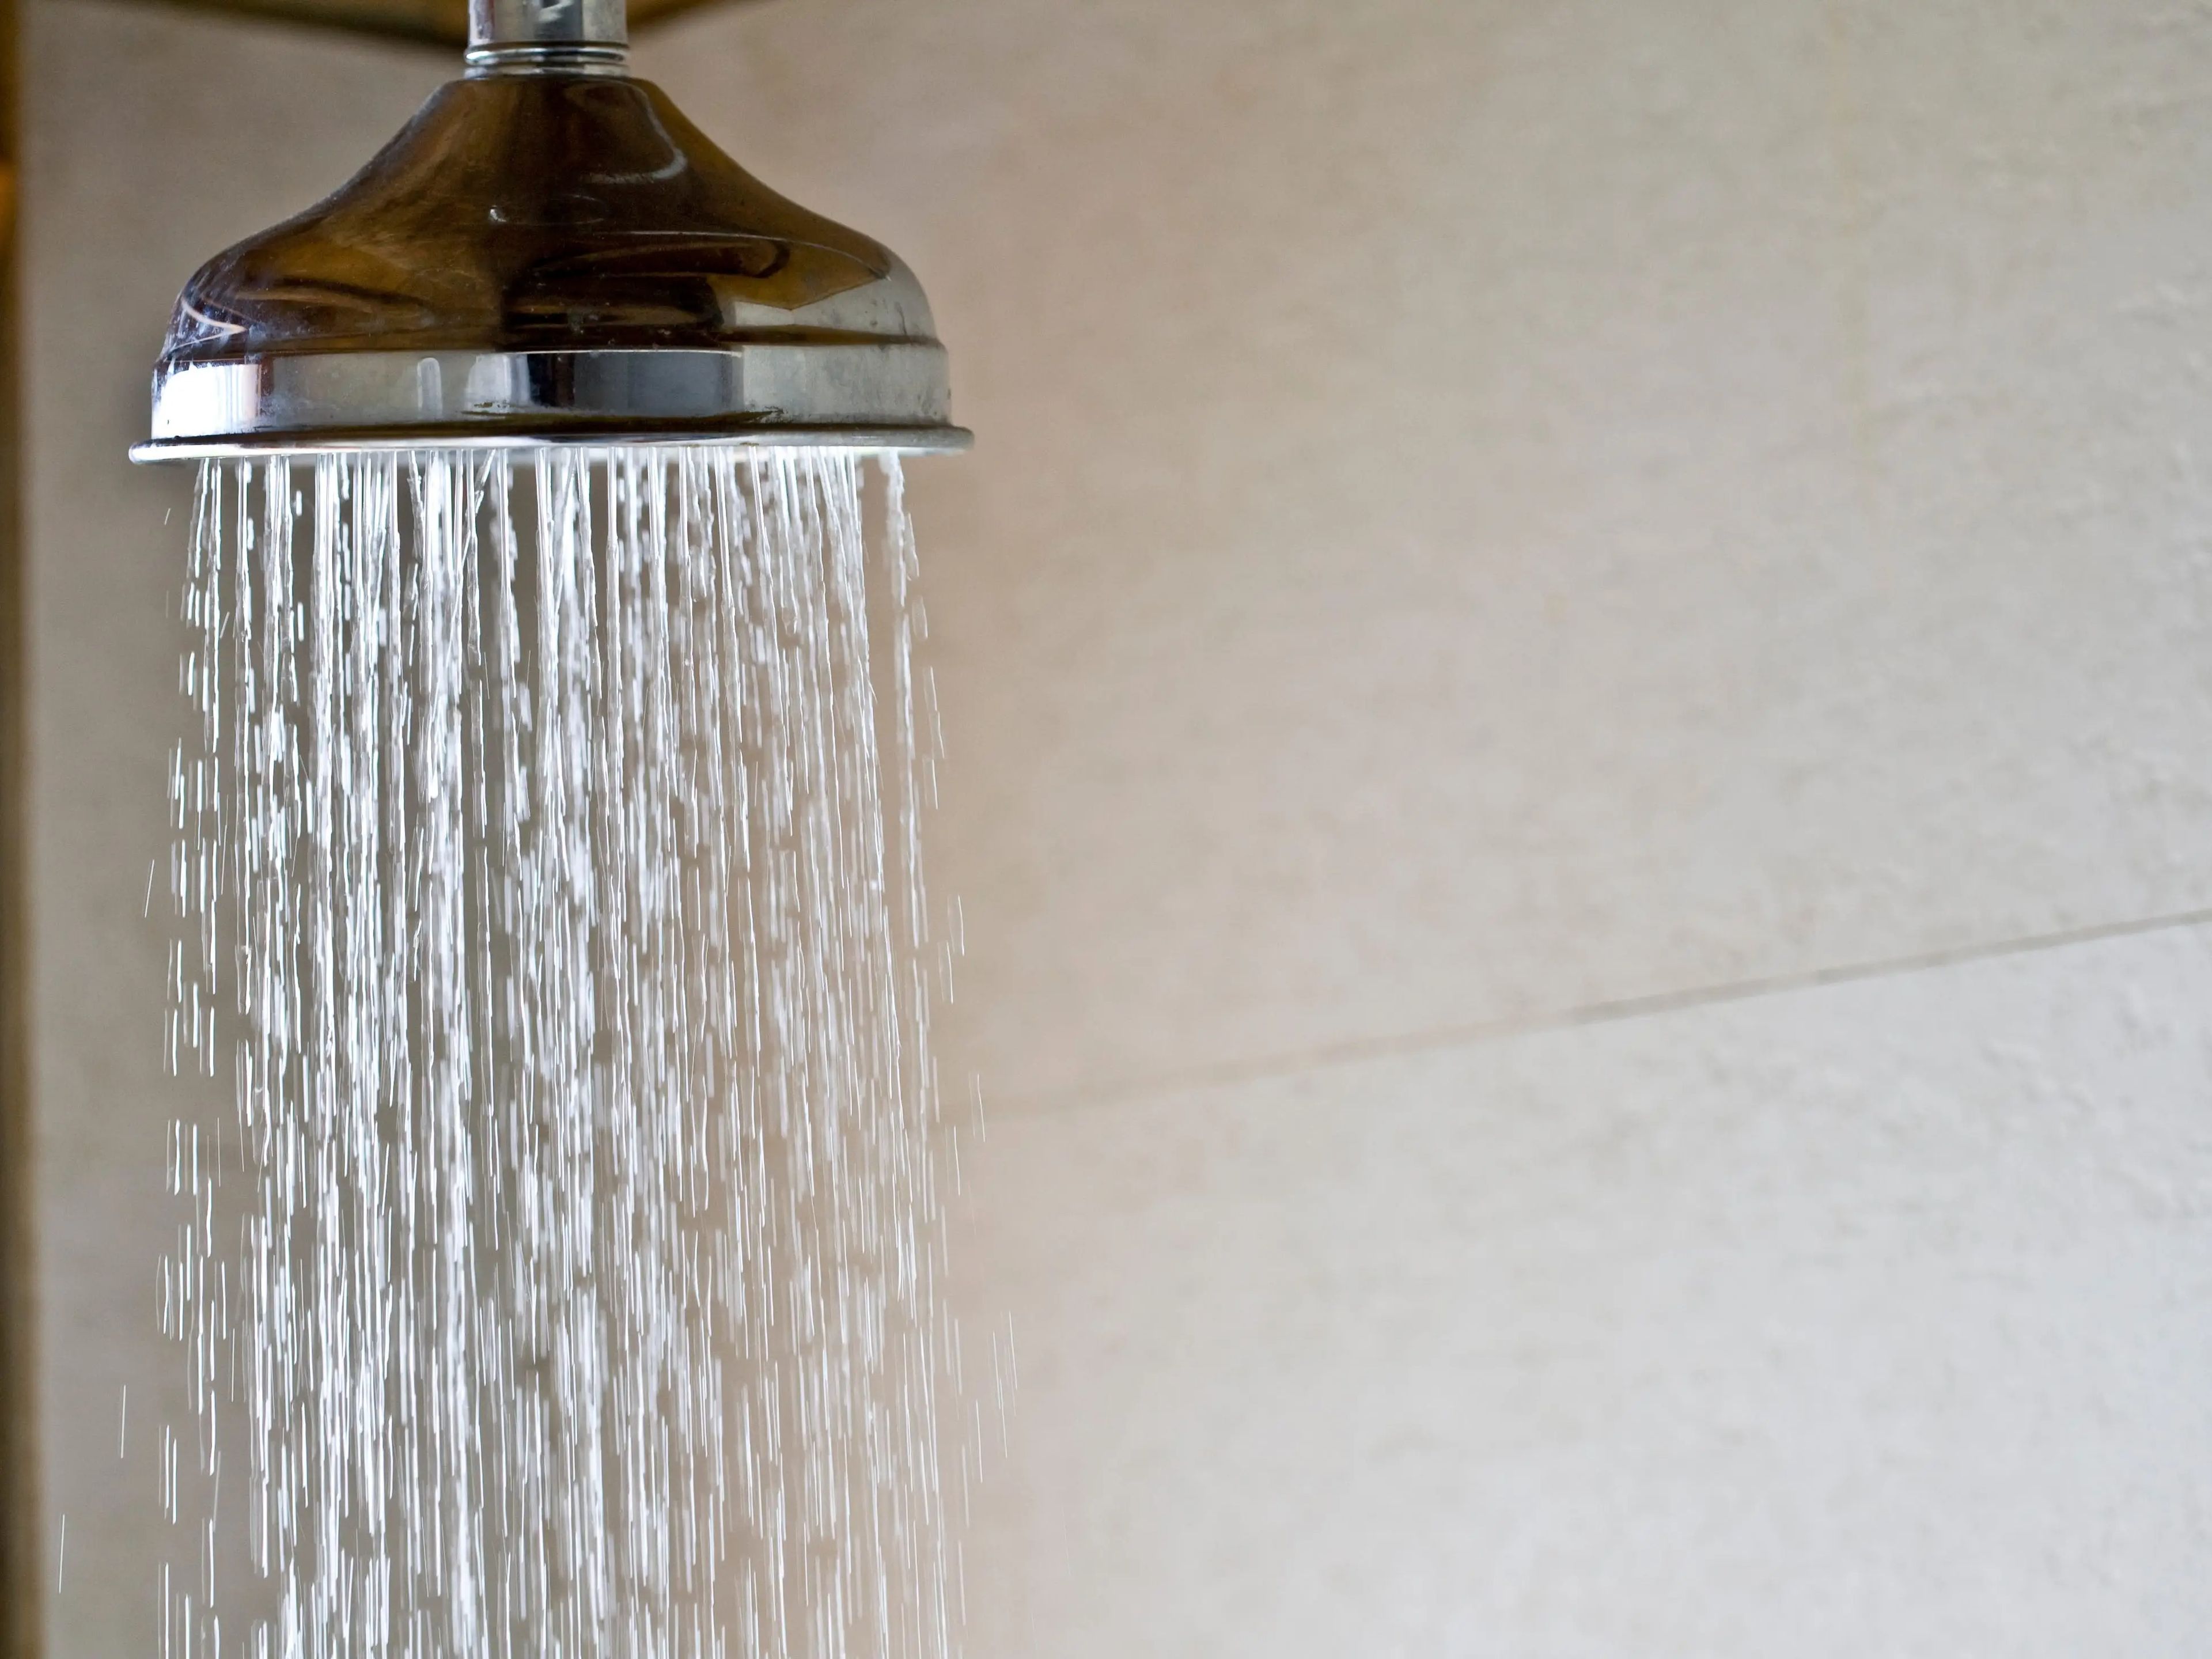 Darse duchas frías se ha relacionado con algunos beneficios para la salud.